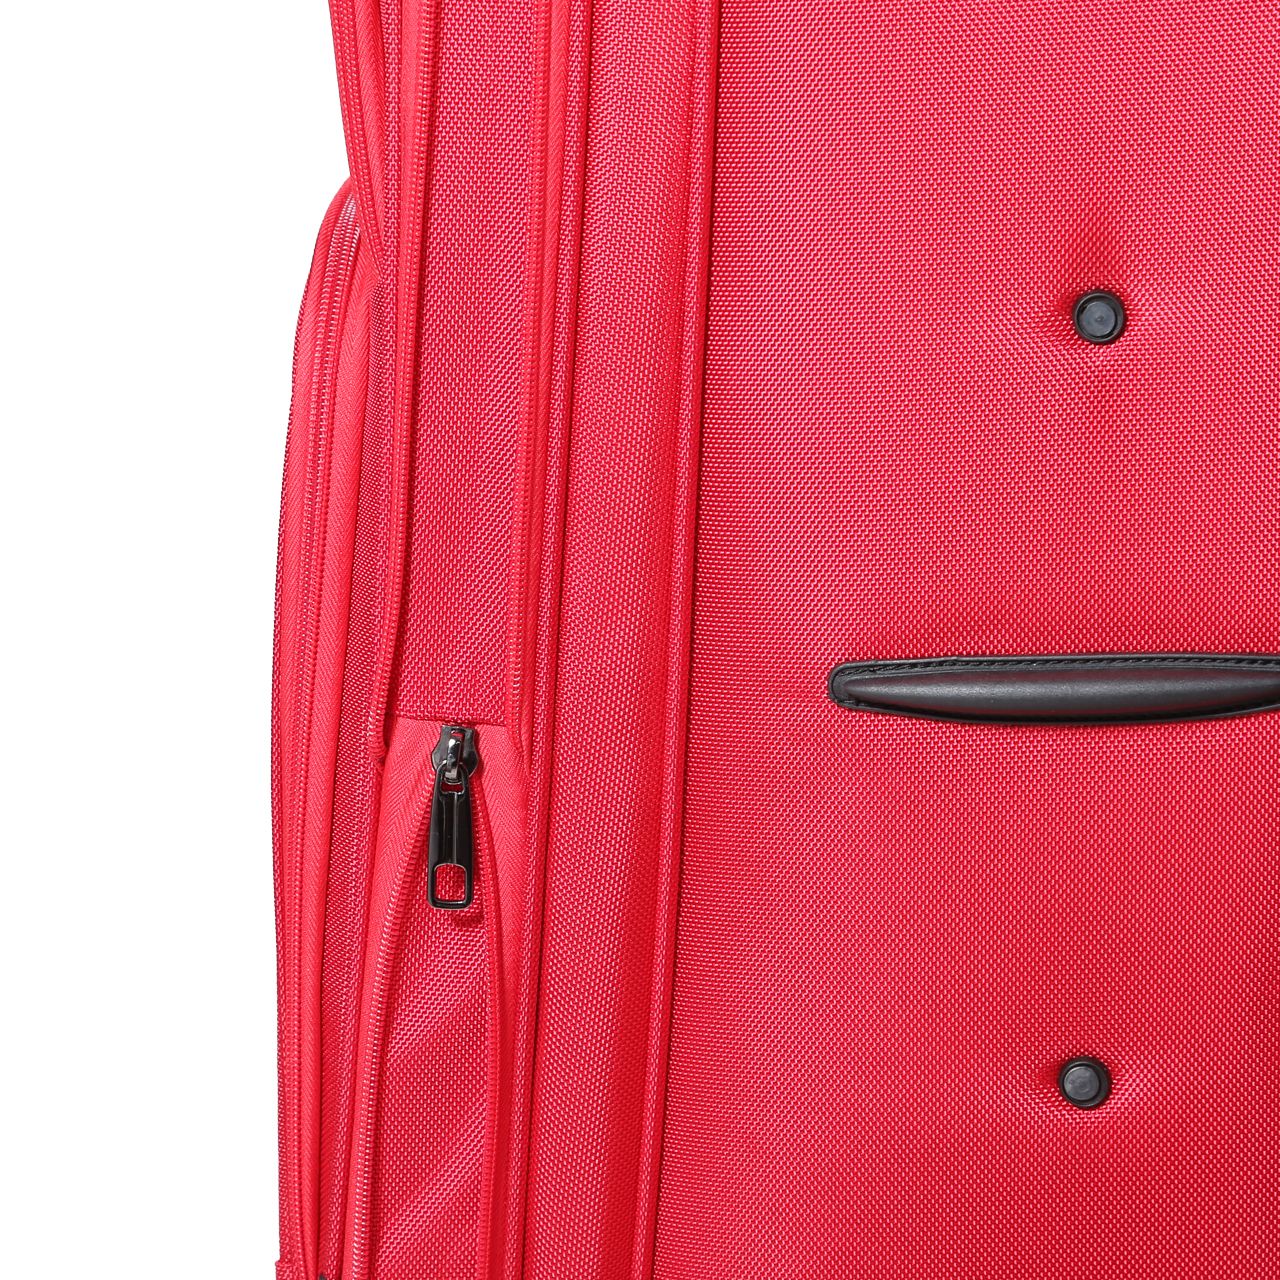  چمدان پیر کاردین مدل SBP1600 سایز متوسط  -  - 11